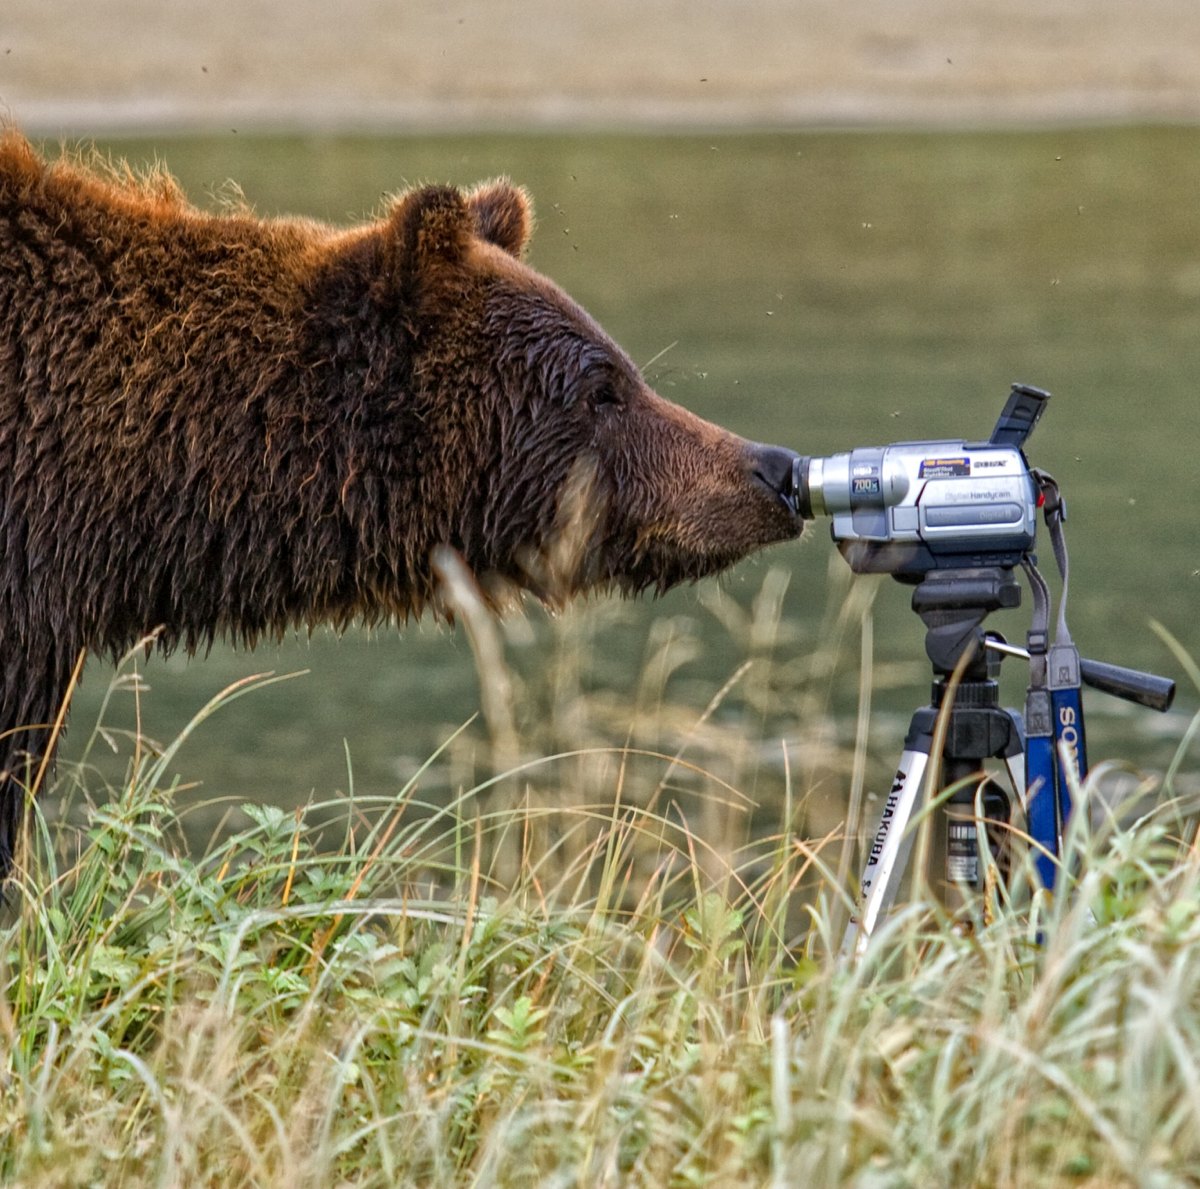 Alaskan brown bear